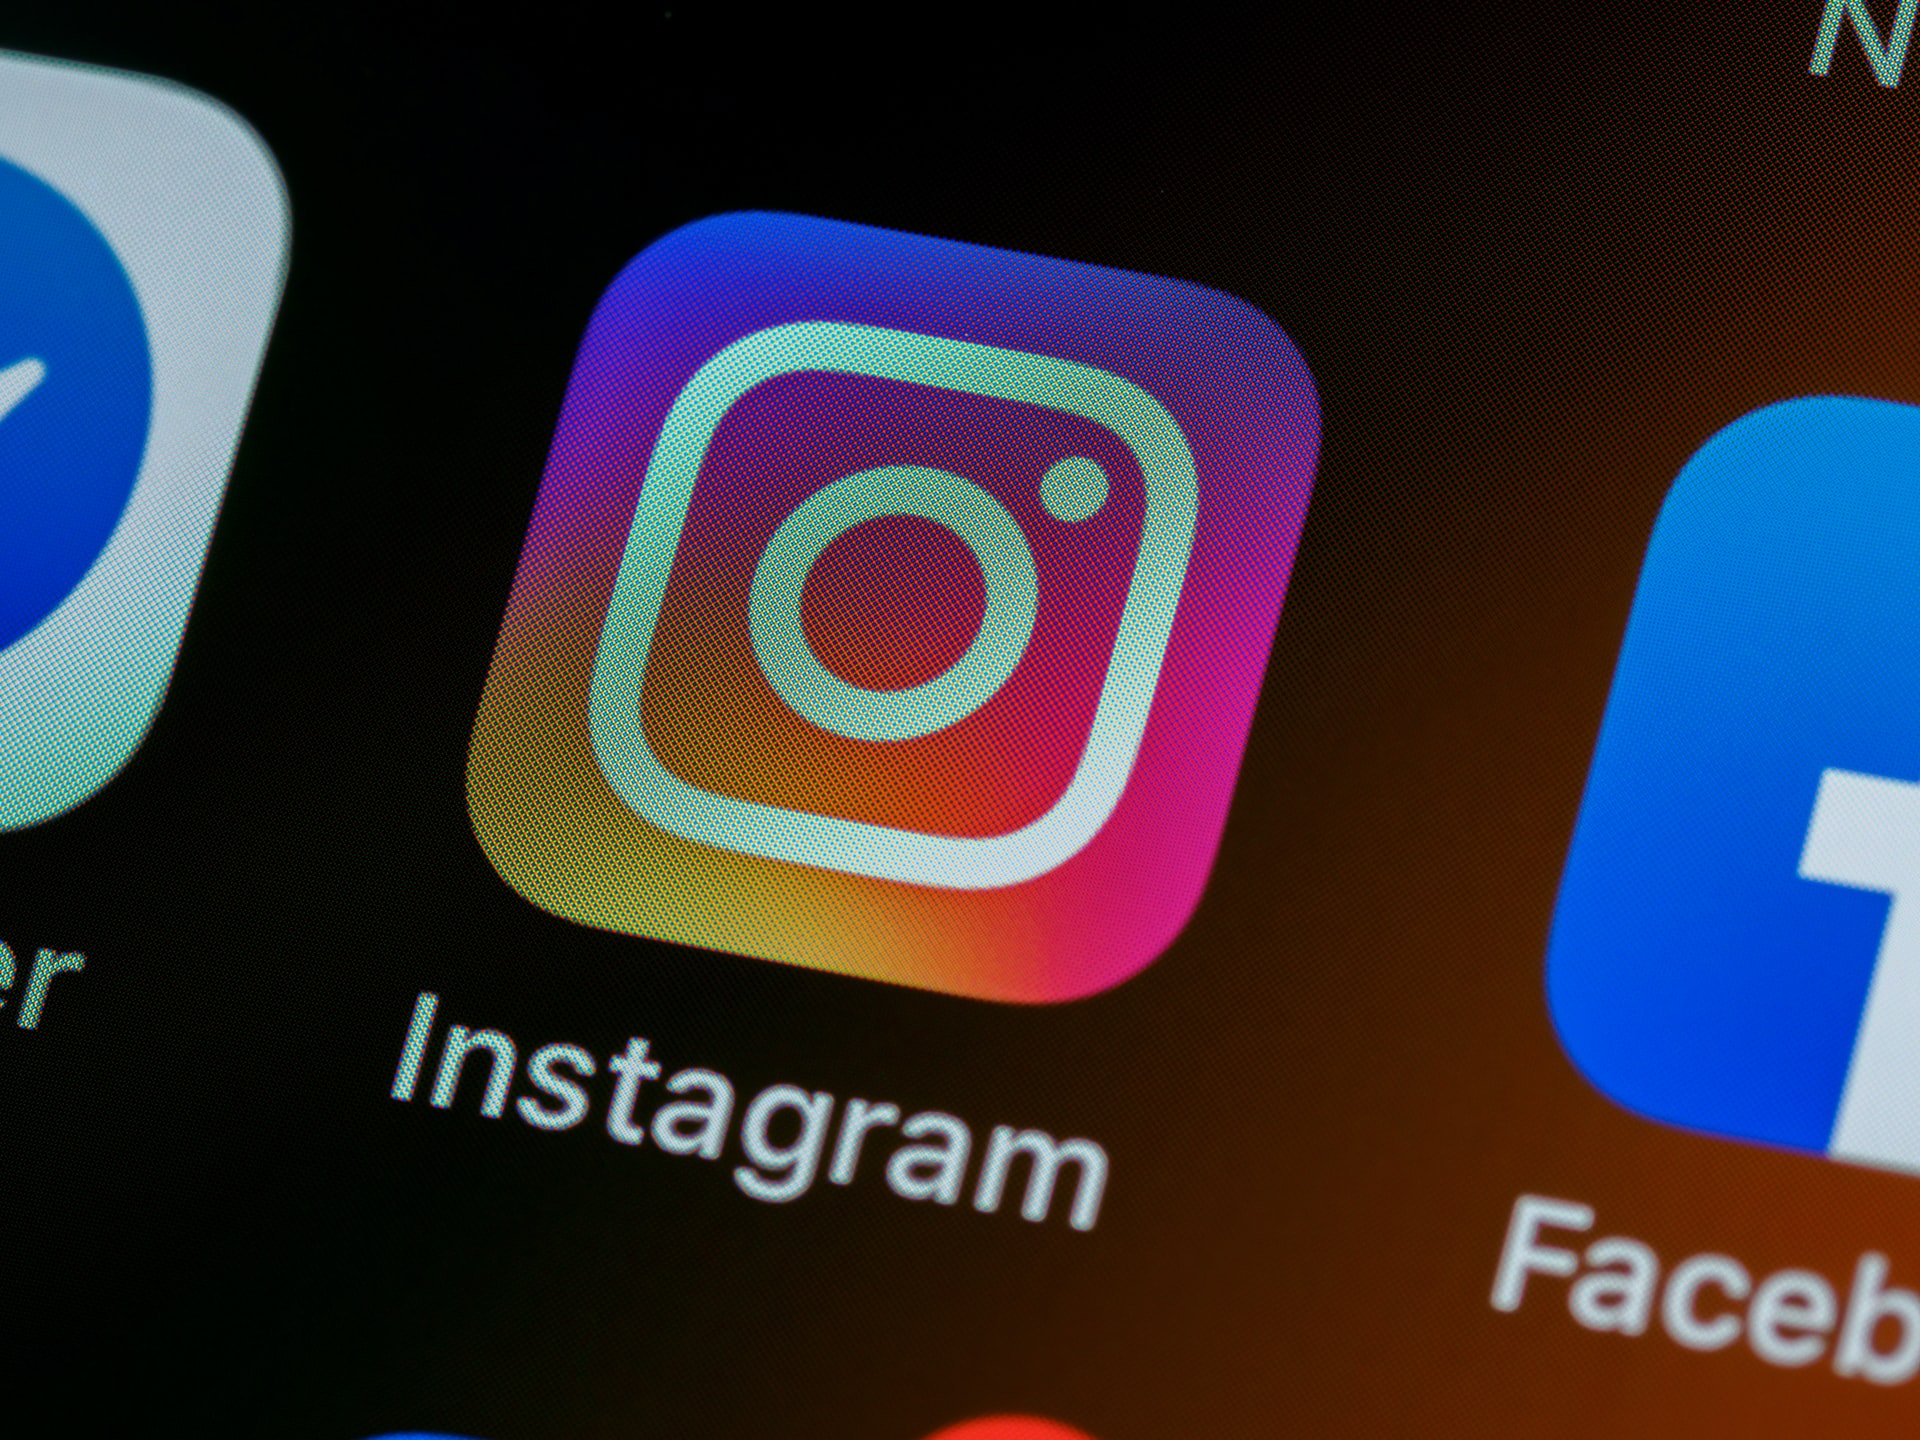 Instagram introduce la verificación de la identidad a través de selfies de vídeo